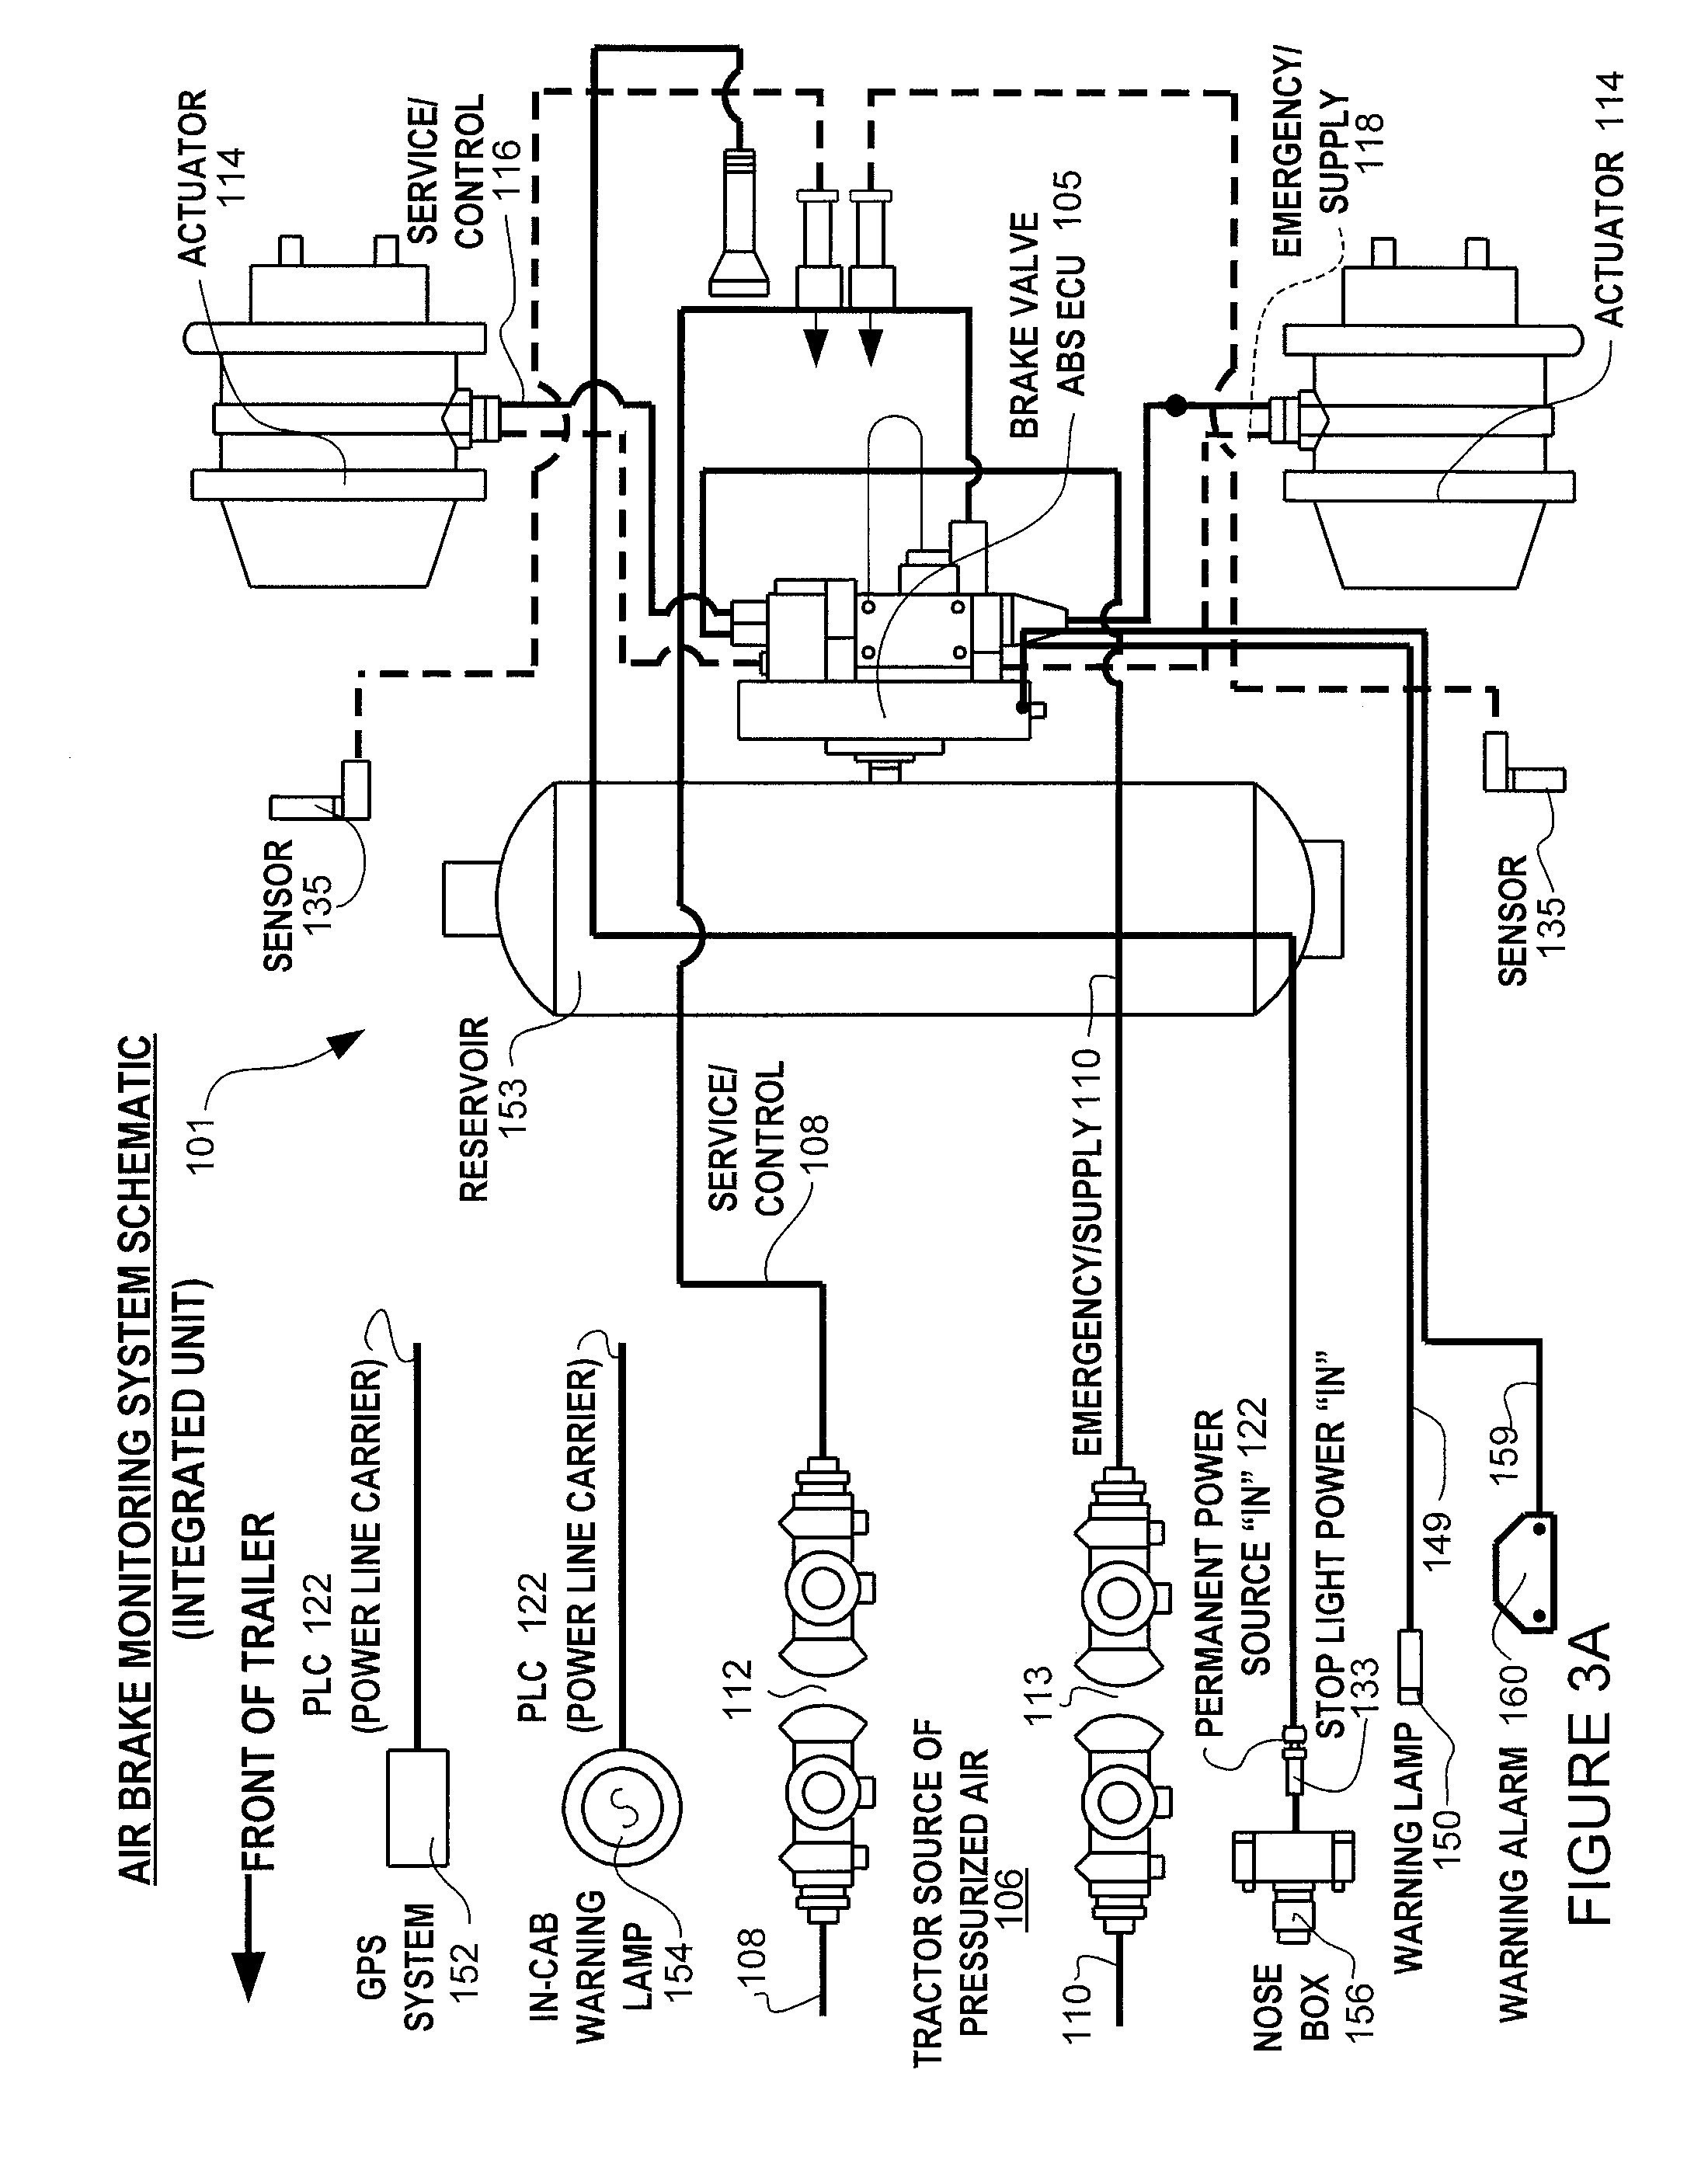 Basic Air Brake System Diagram 2016 Cyclone 4100 Wiring Diagram Wiring Diagram New Of Basic Air Brake System Diagram